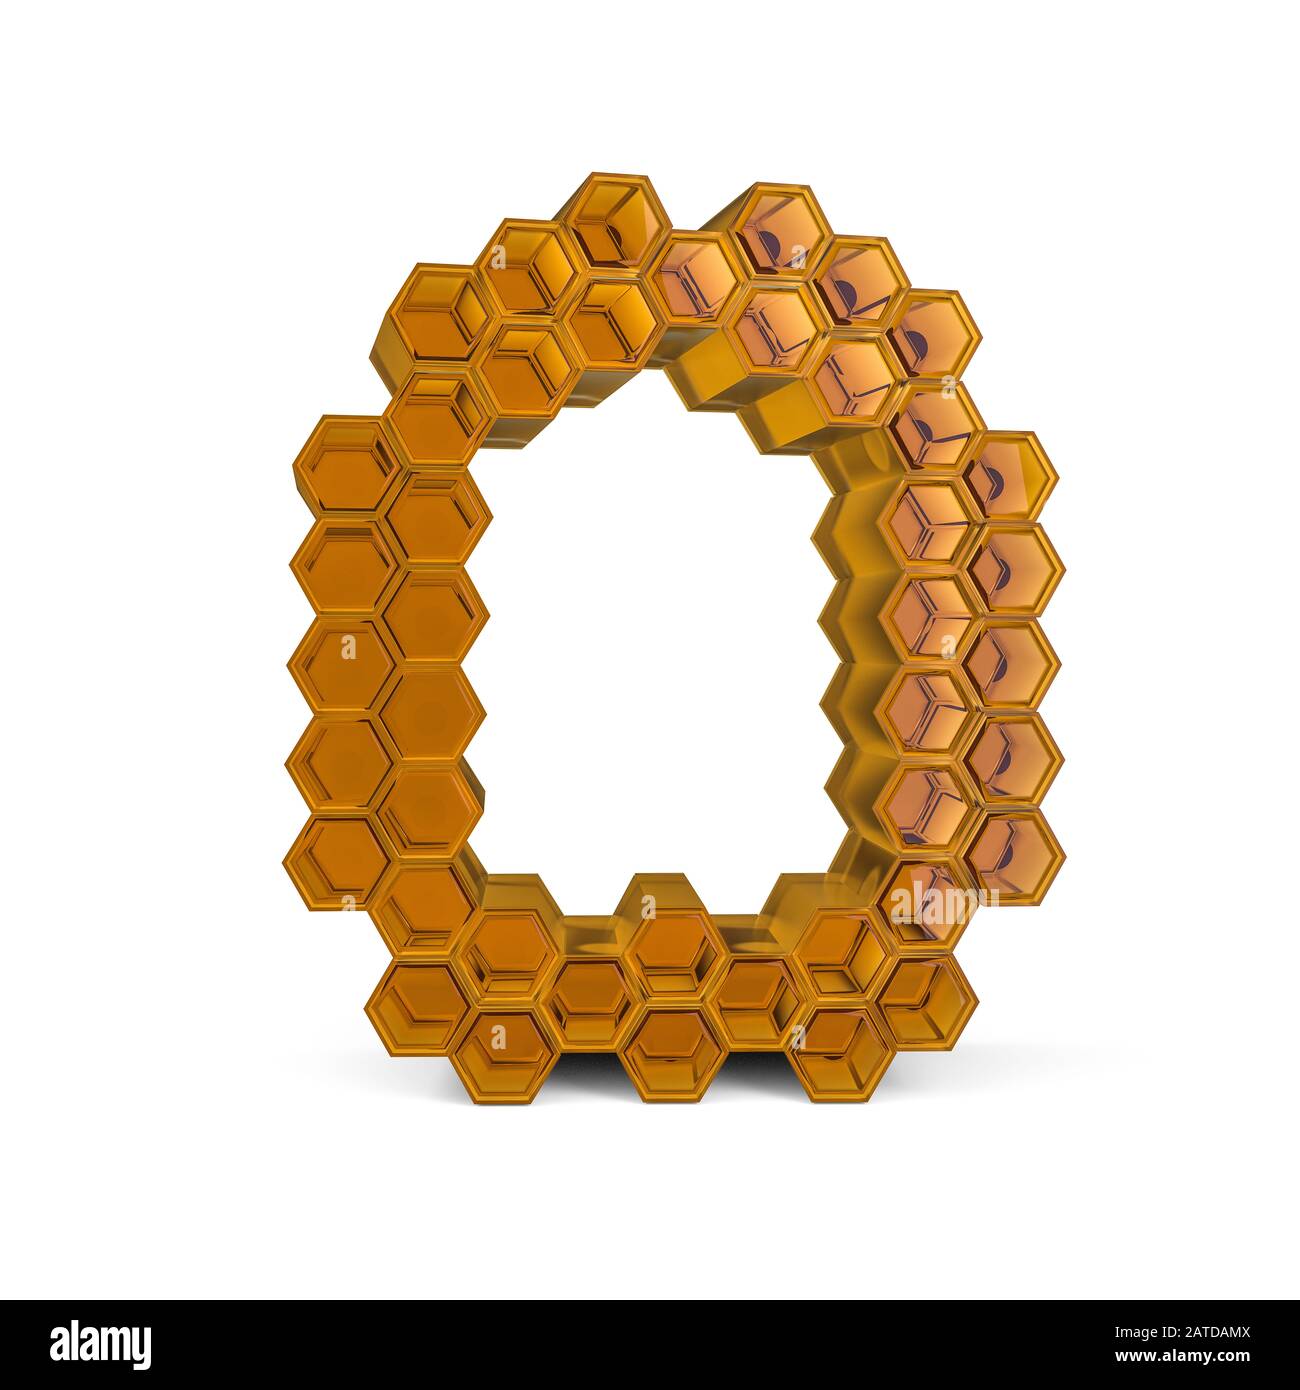 Numéro 0. Signe numérique. Police nid d'abeilles orange brillant et abstraite. Rendu tridimensionnel Banque D'Images